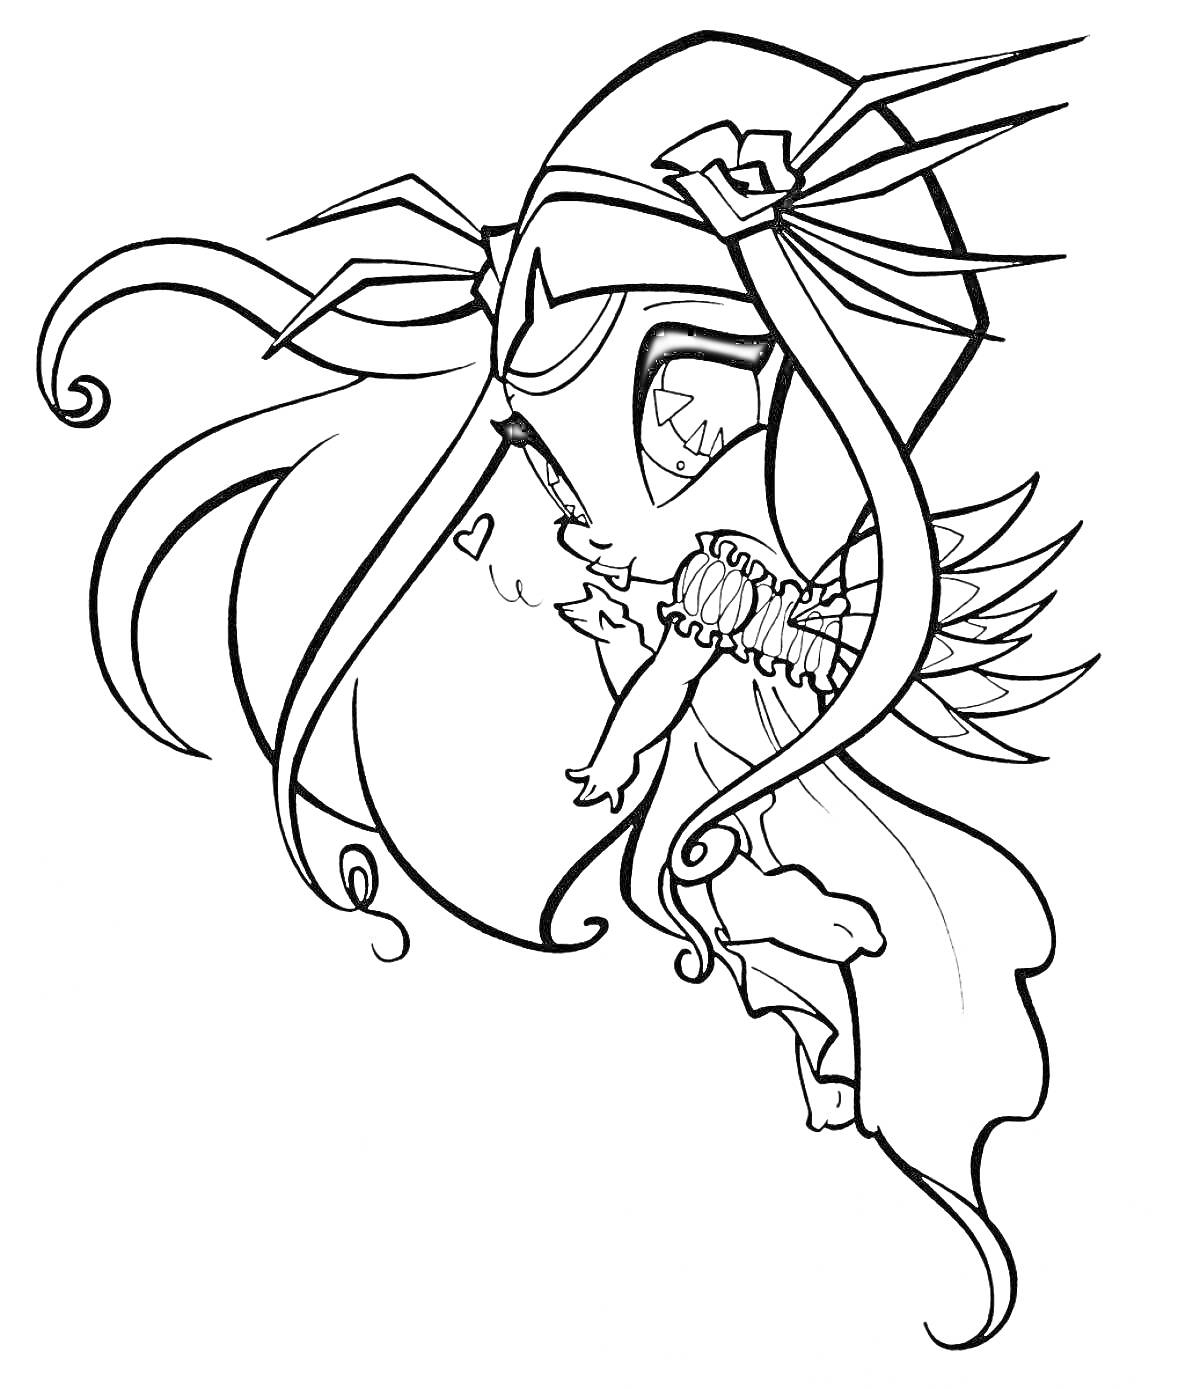 Раскраска Пикси Винкс в полете с украшением на голове, распущенными волосами, крыльями и длинным платьем